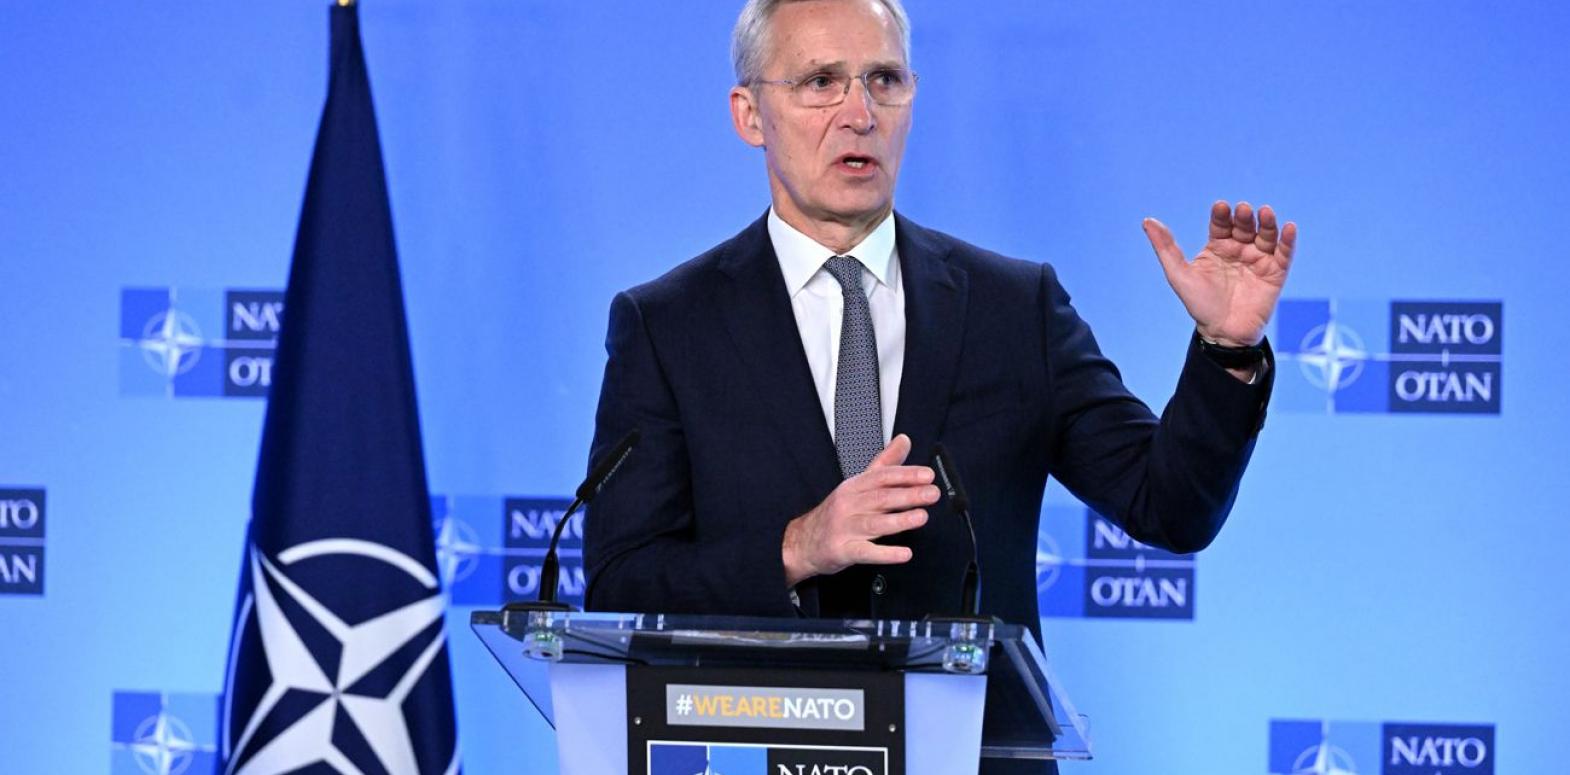 Китай бросает вызов НАТО и коллективному Западу, - Столтенберг